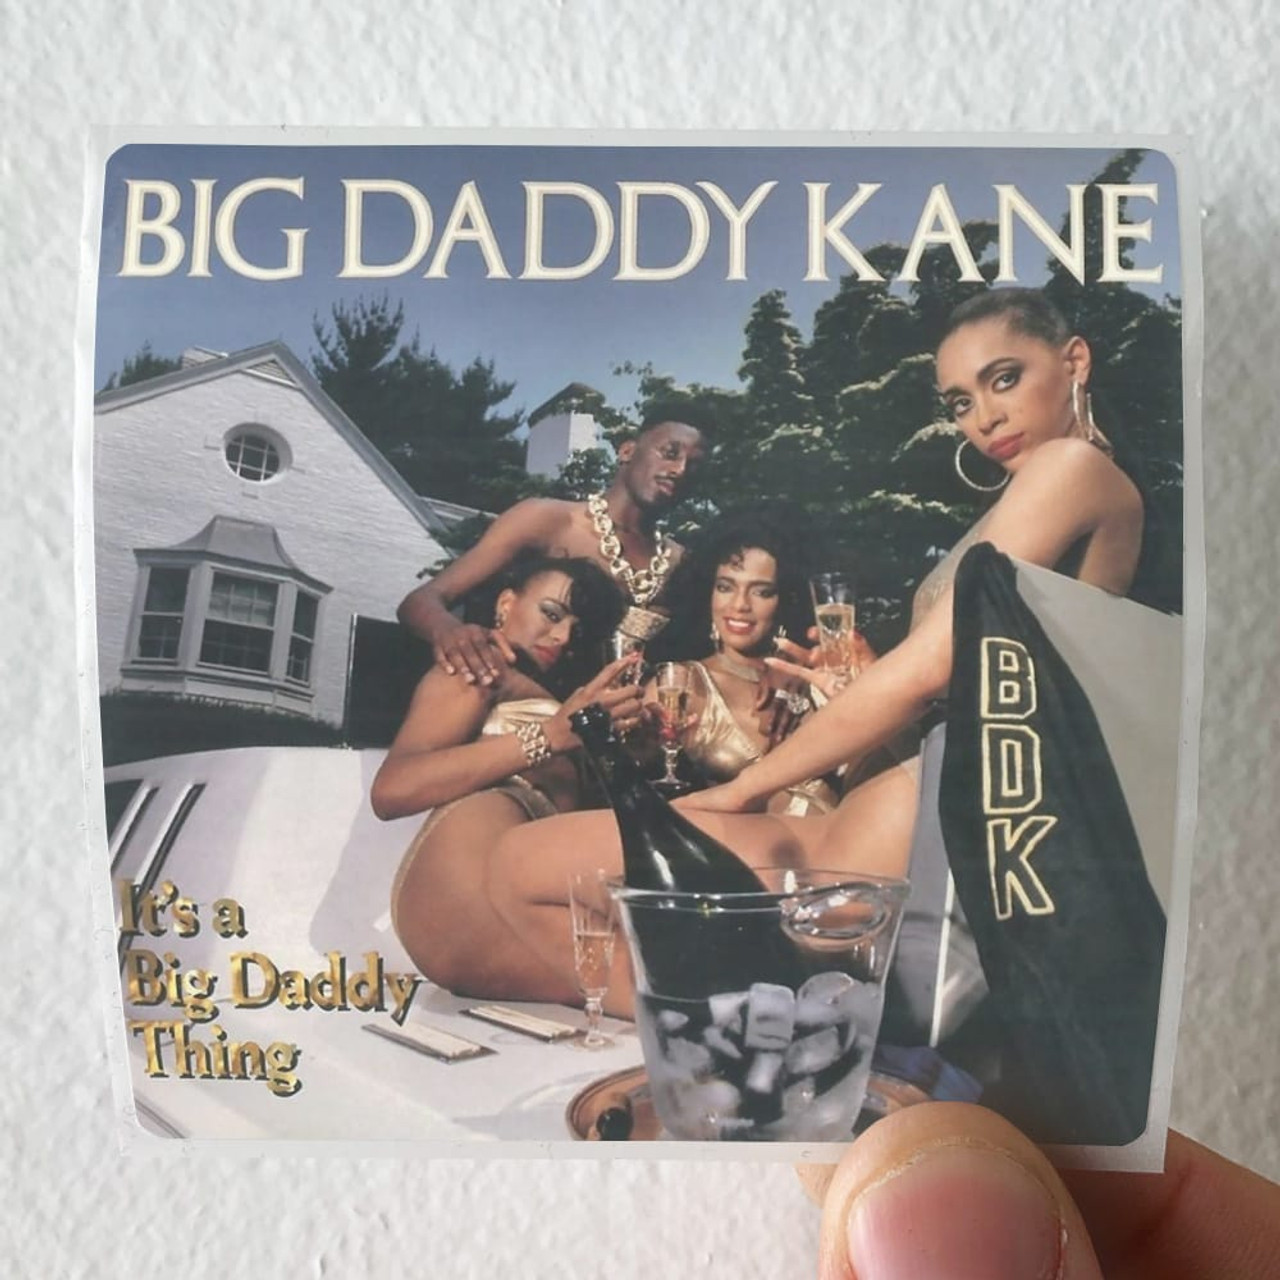 Big daddy kane discography